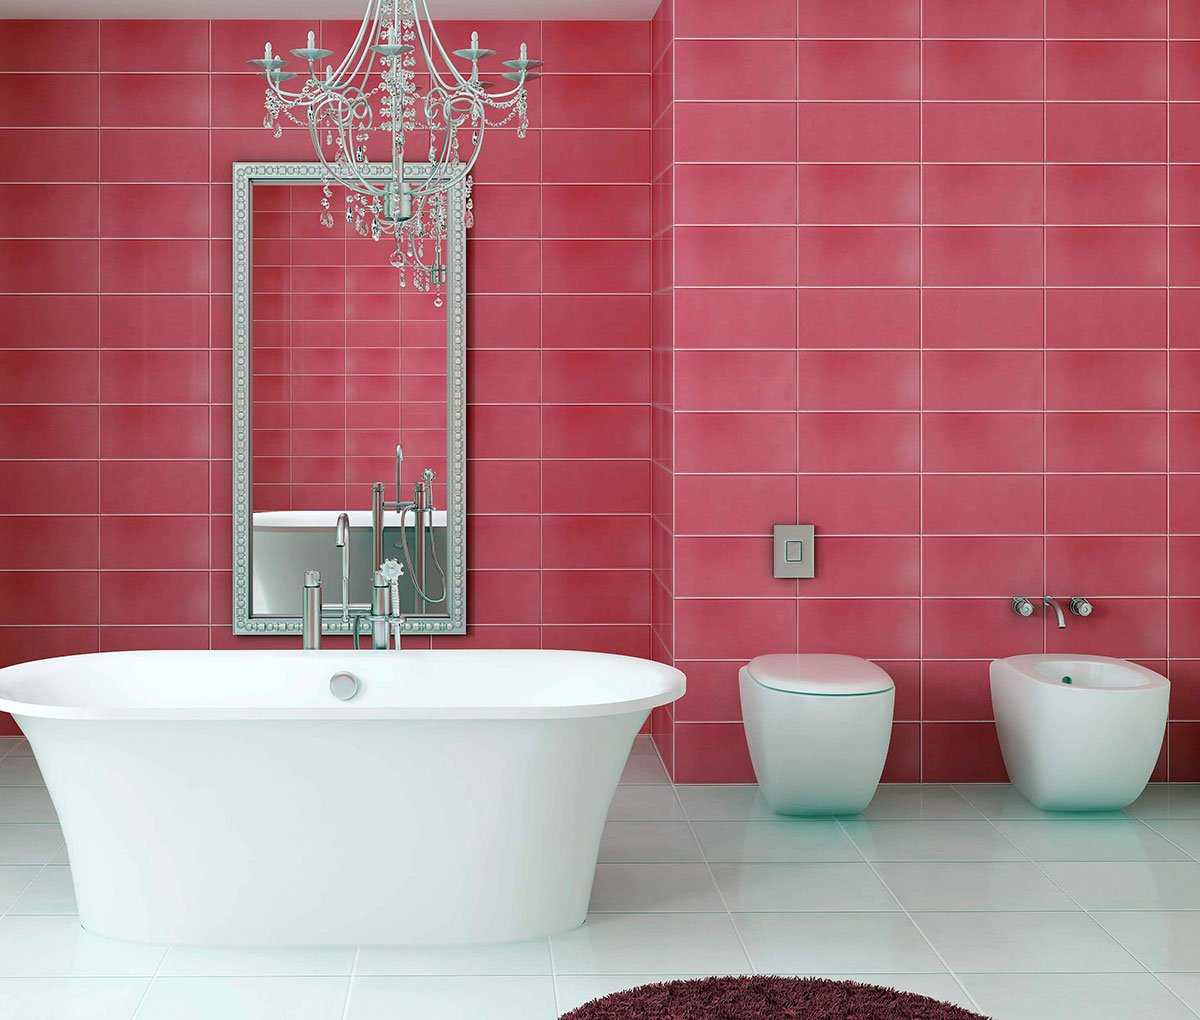 gabungan warna merah jambu terang dalam reka bentuk bilik tidur dengan warna lain